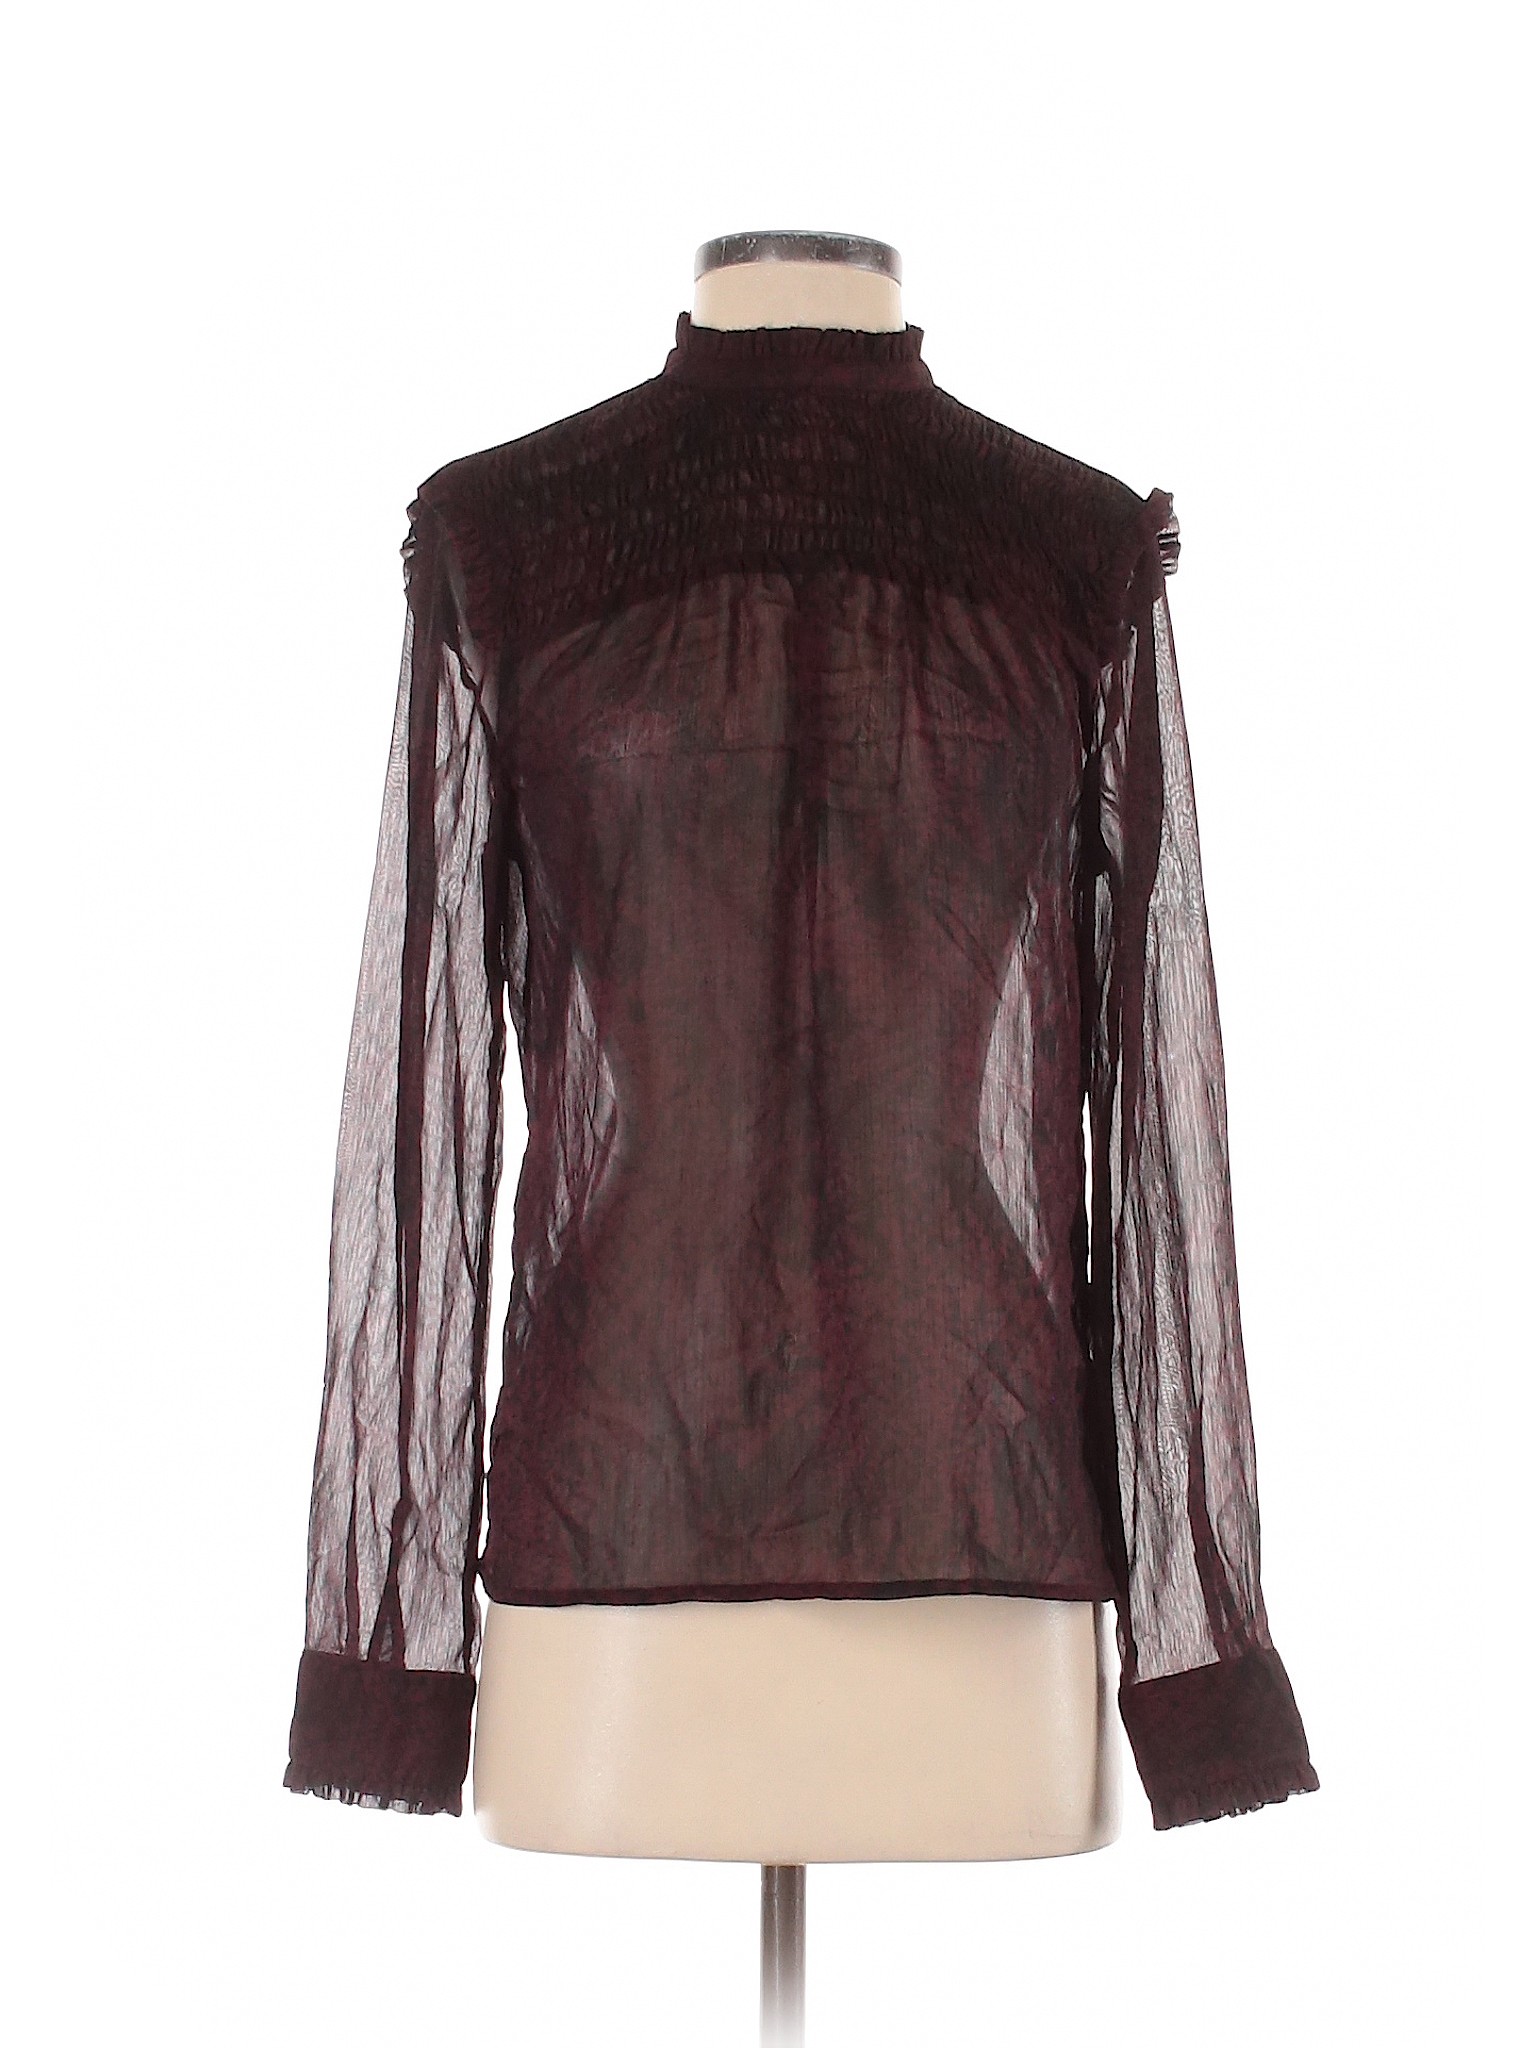 Who What Wear Women Brown Long Sleeve Blouse S | eBay